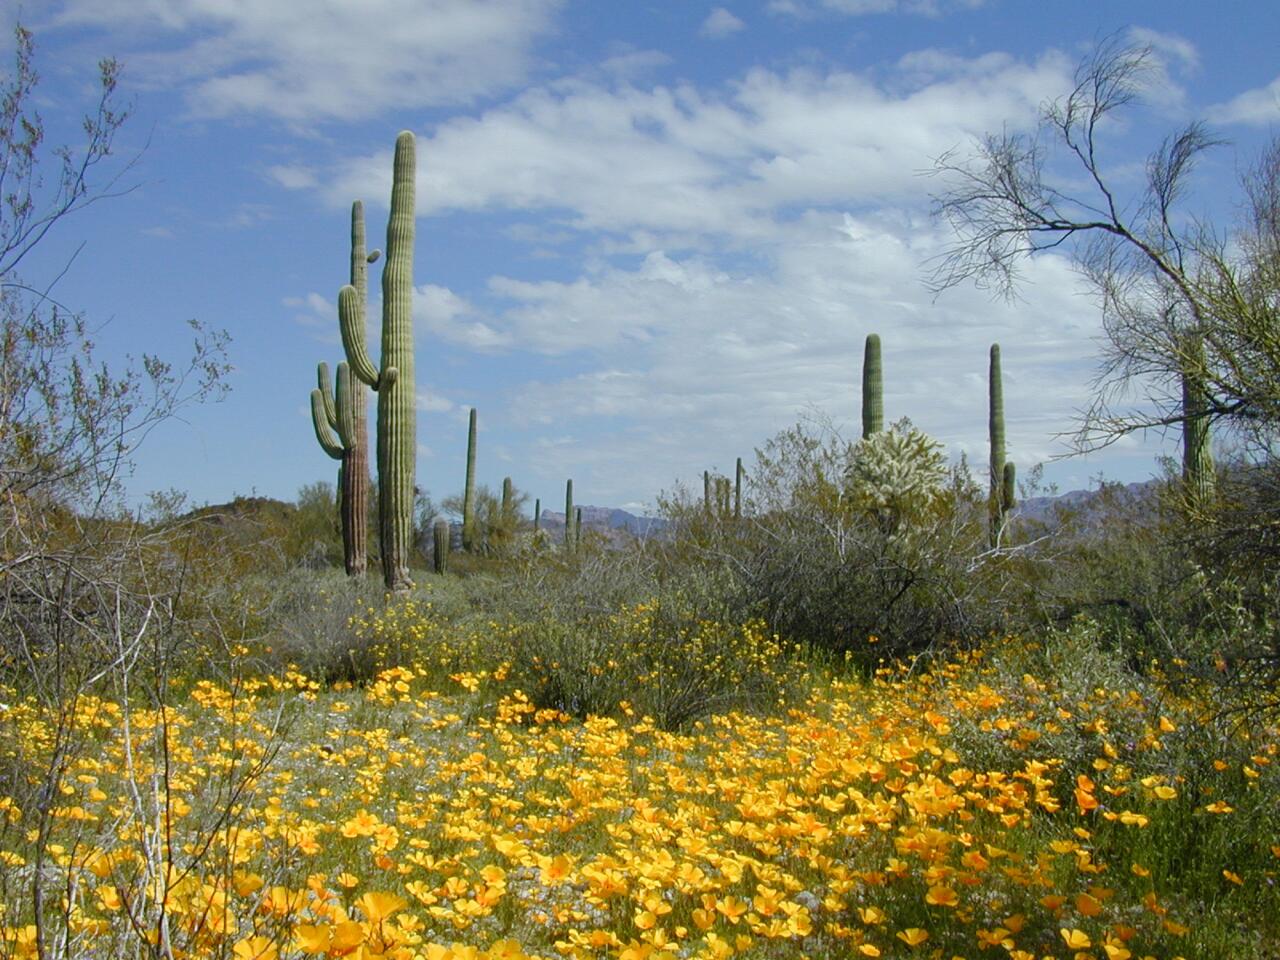 Arizona, USA